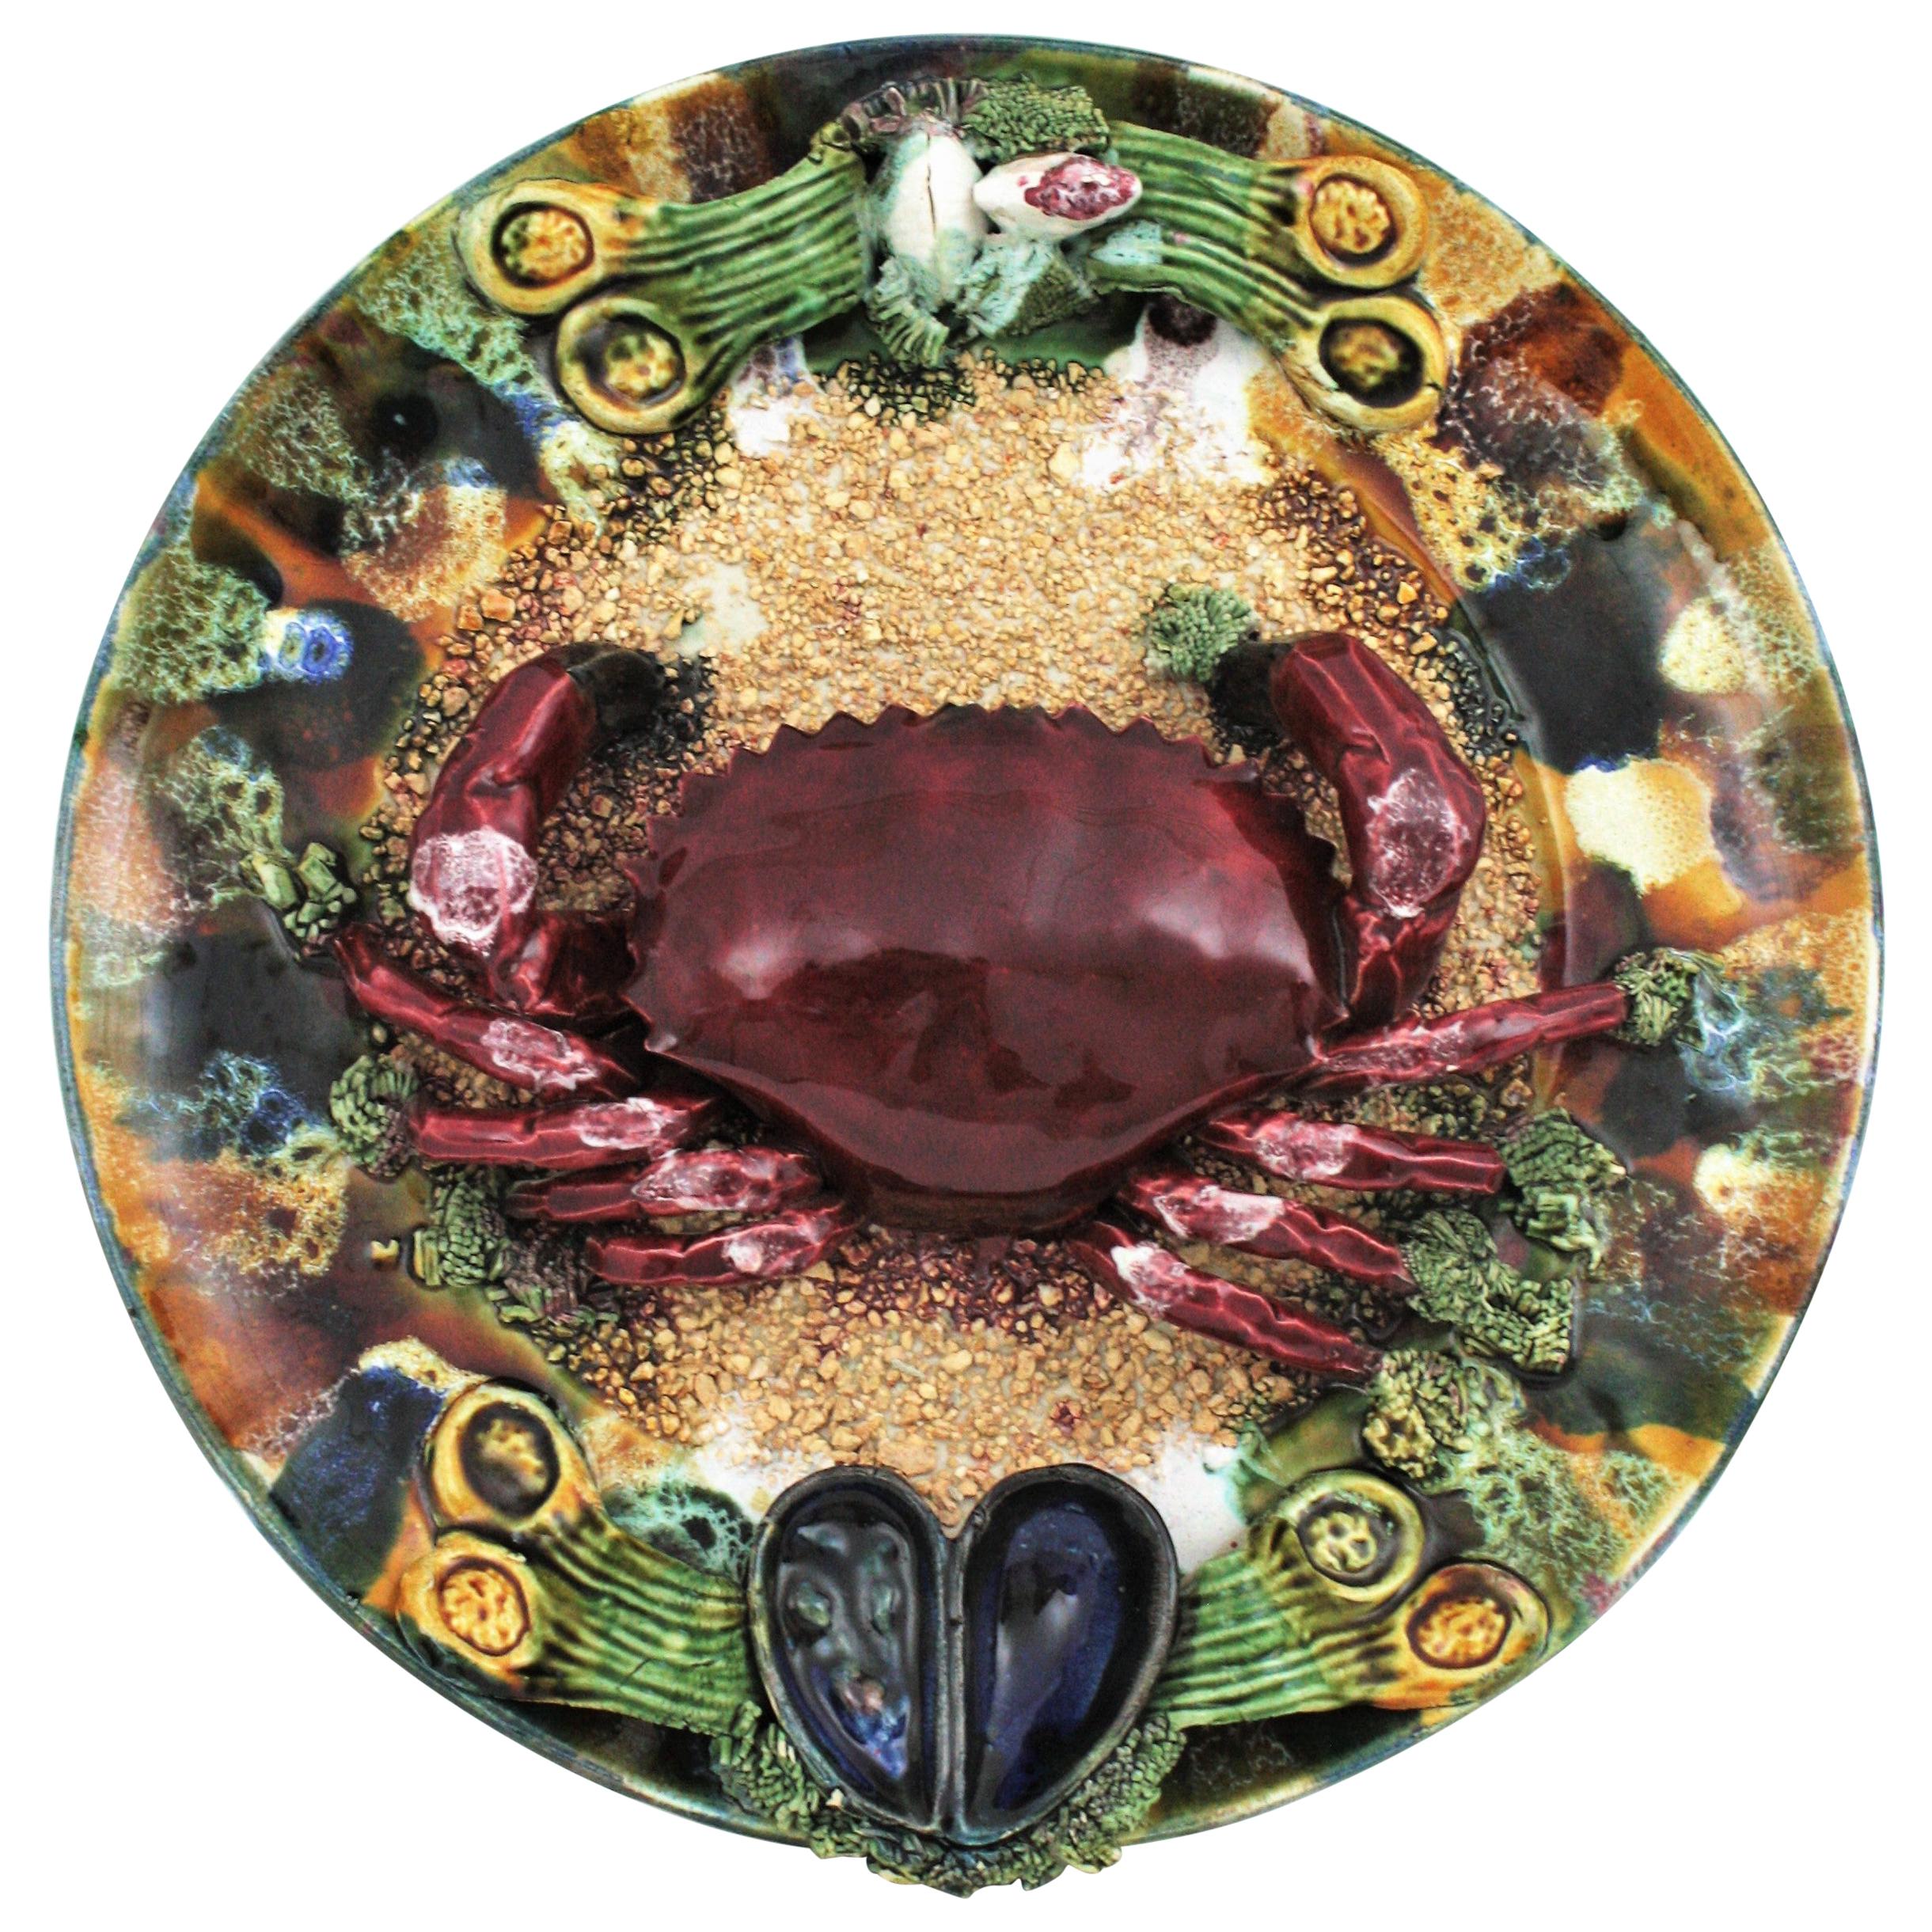 Très grande assiette murale en céramique en forme de crabe en trompe-l'œil en faïence